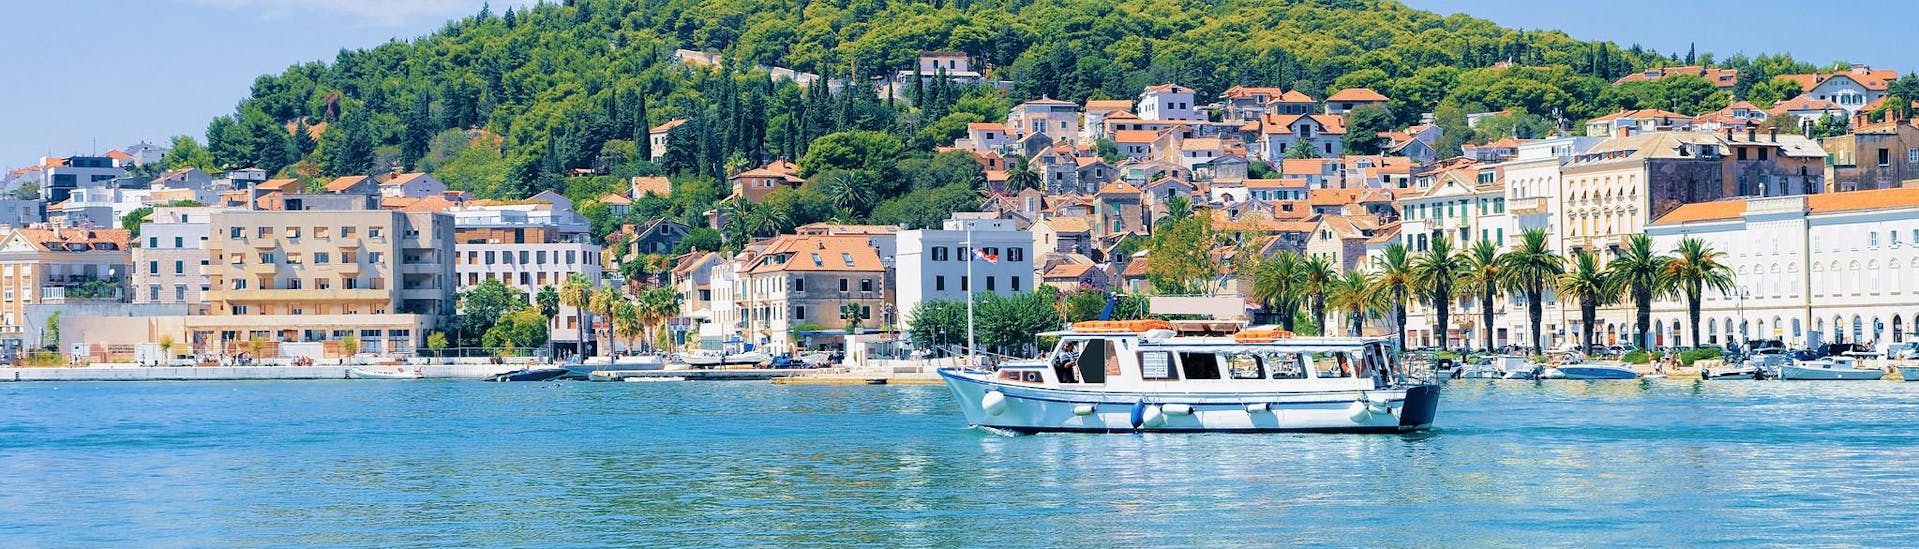 Gente disfrutando de un paseo en barco barato por menos de 30€ cerca de la costa.